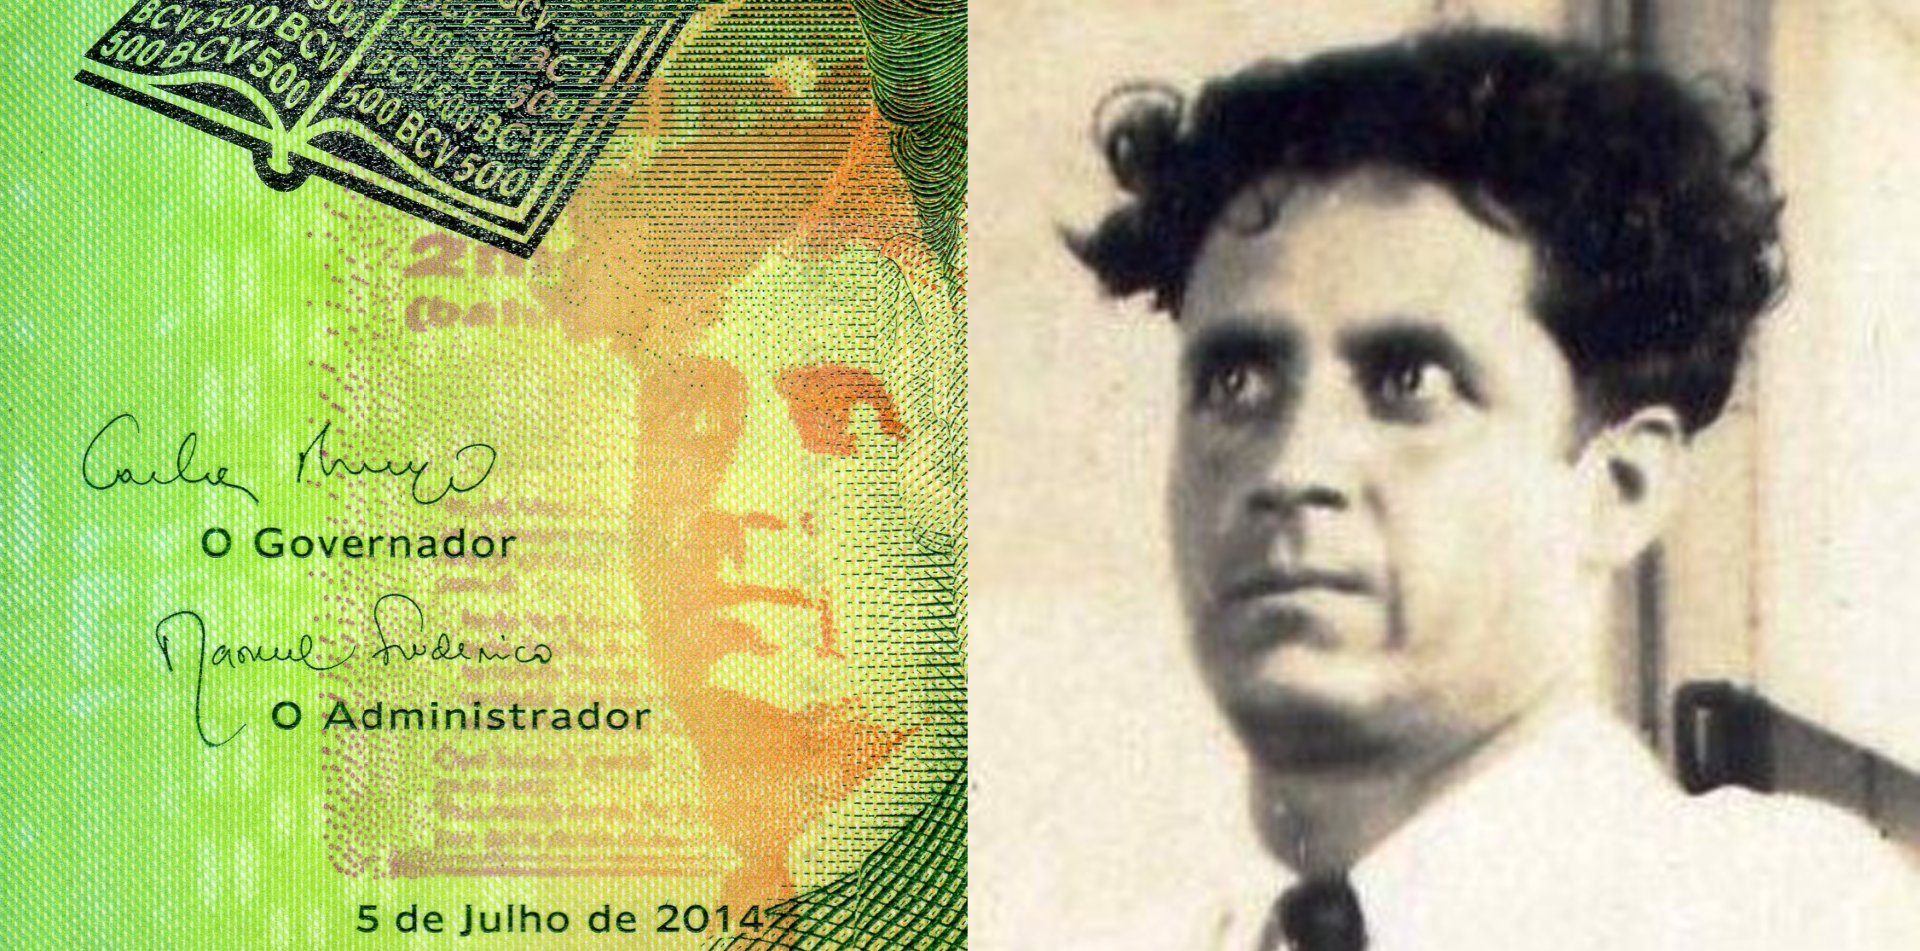 Obr. 2 A) Druhý portrét Jorge Barbosy ve výřezu z averzu bankovky P#72 B) Výřez z originální fotografické předlohy portrétu. Autor: ND, v době působení na celní správě. Převzato z: http://www.barrosbrito .com/3313.html